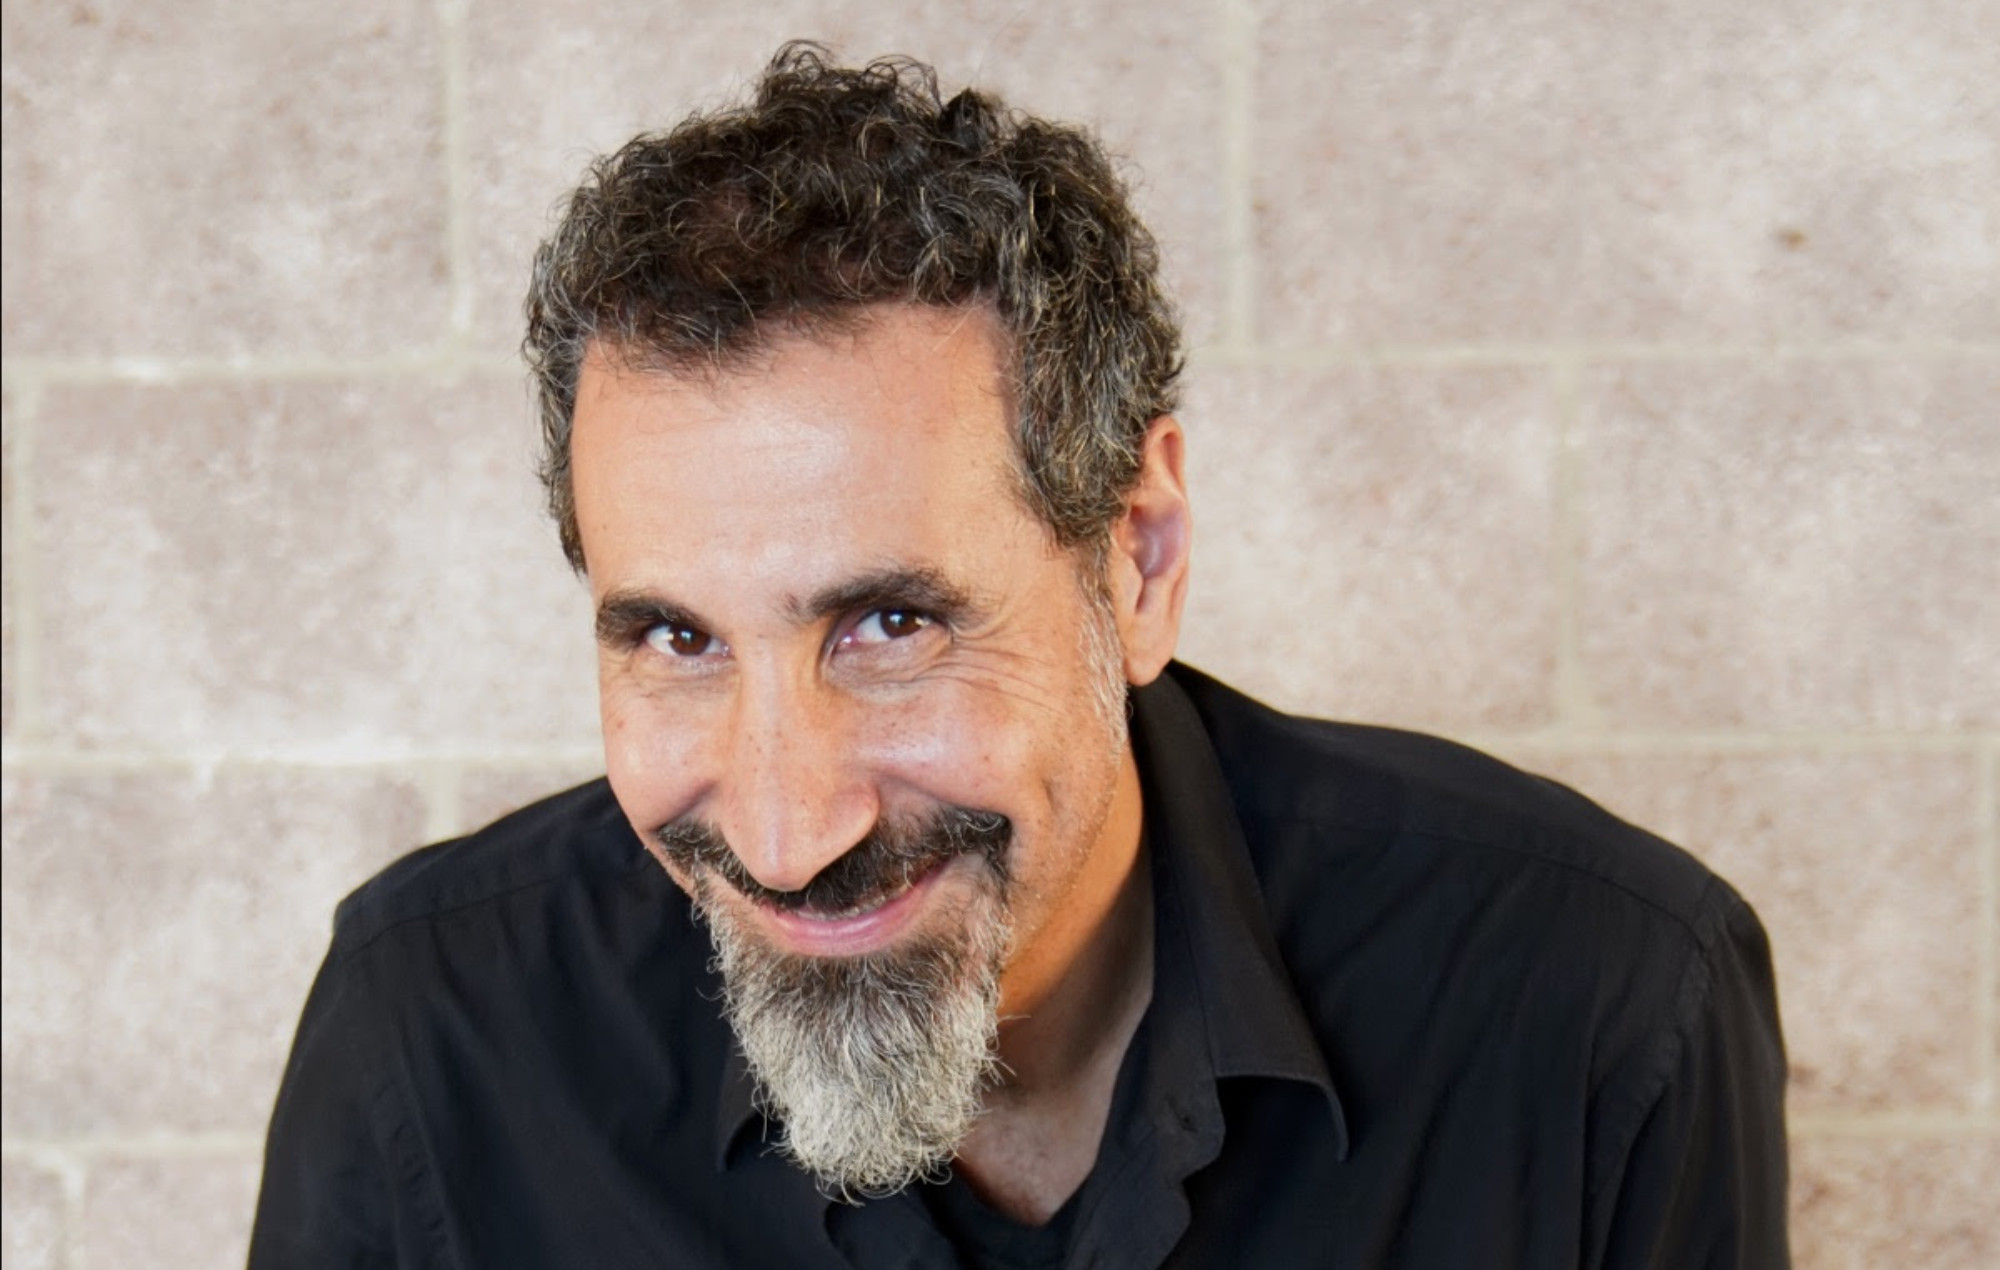 Escuche la nueva composición clásica de 24 minutos de Serj Tankian "Disarming Time".